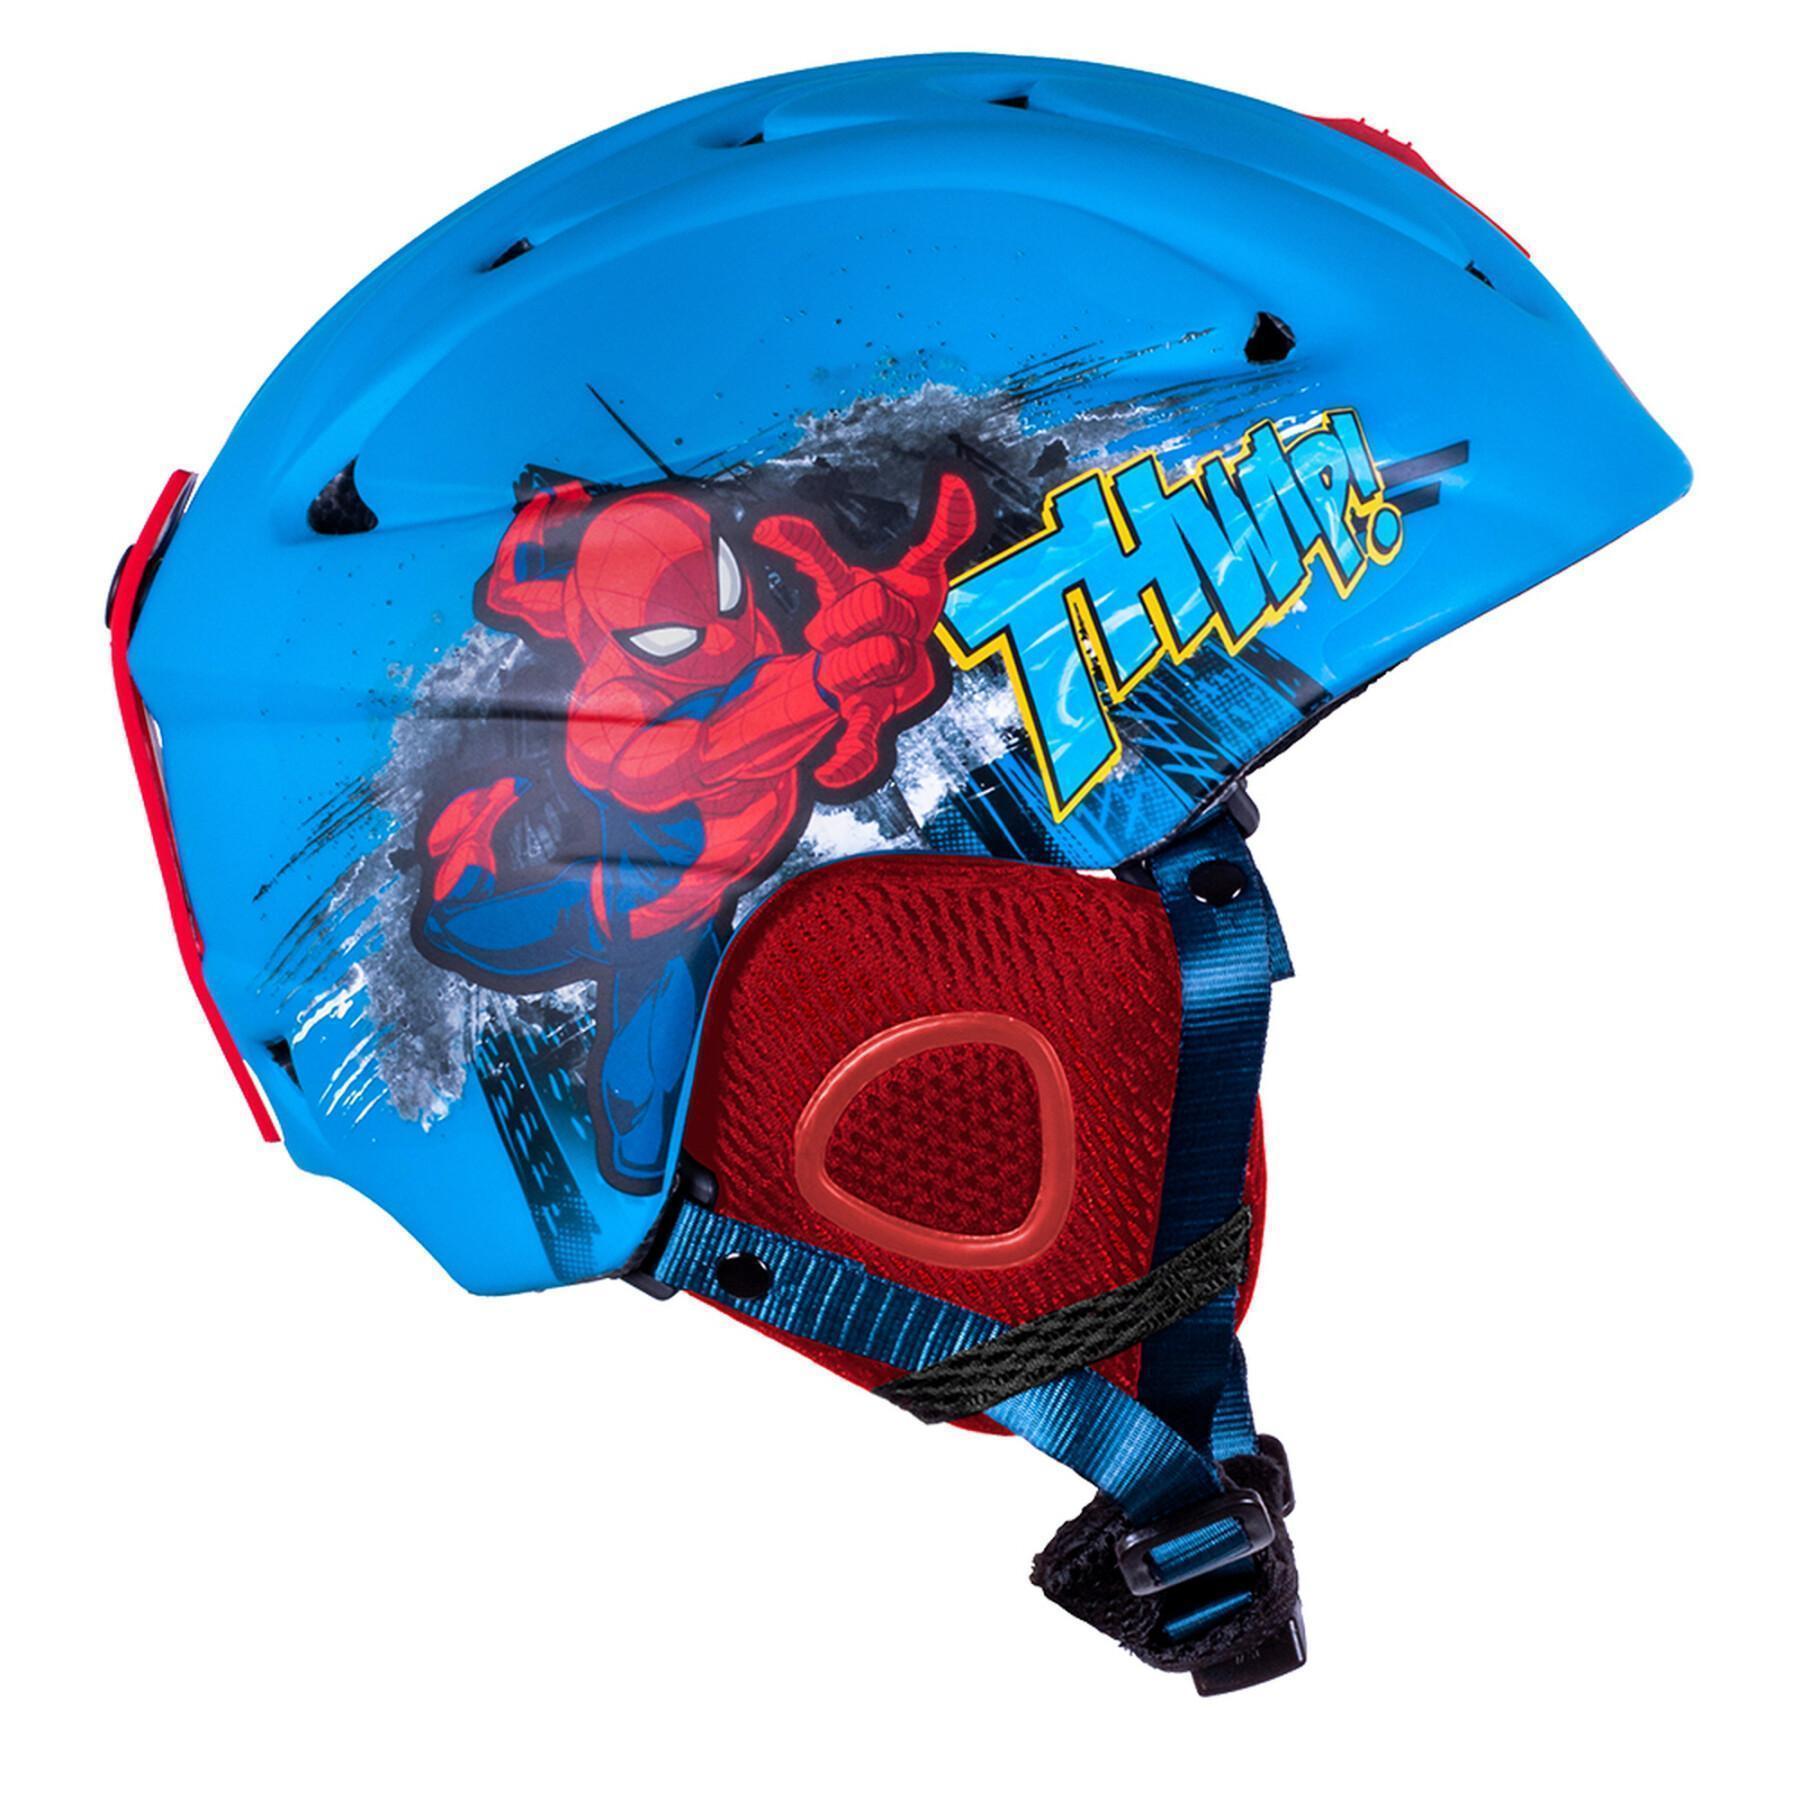 Kinder-Ski-Helm Seven Spider Man